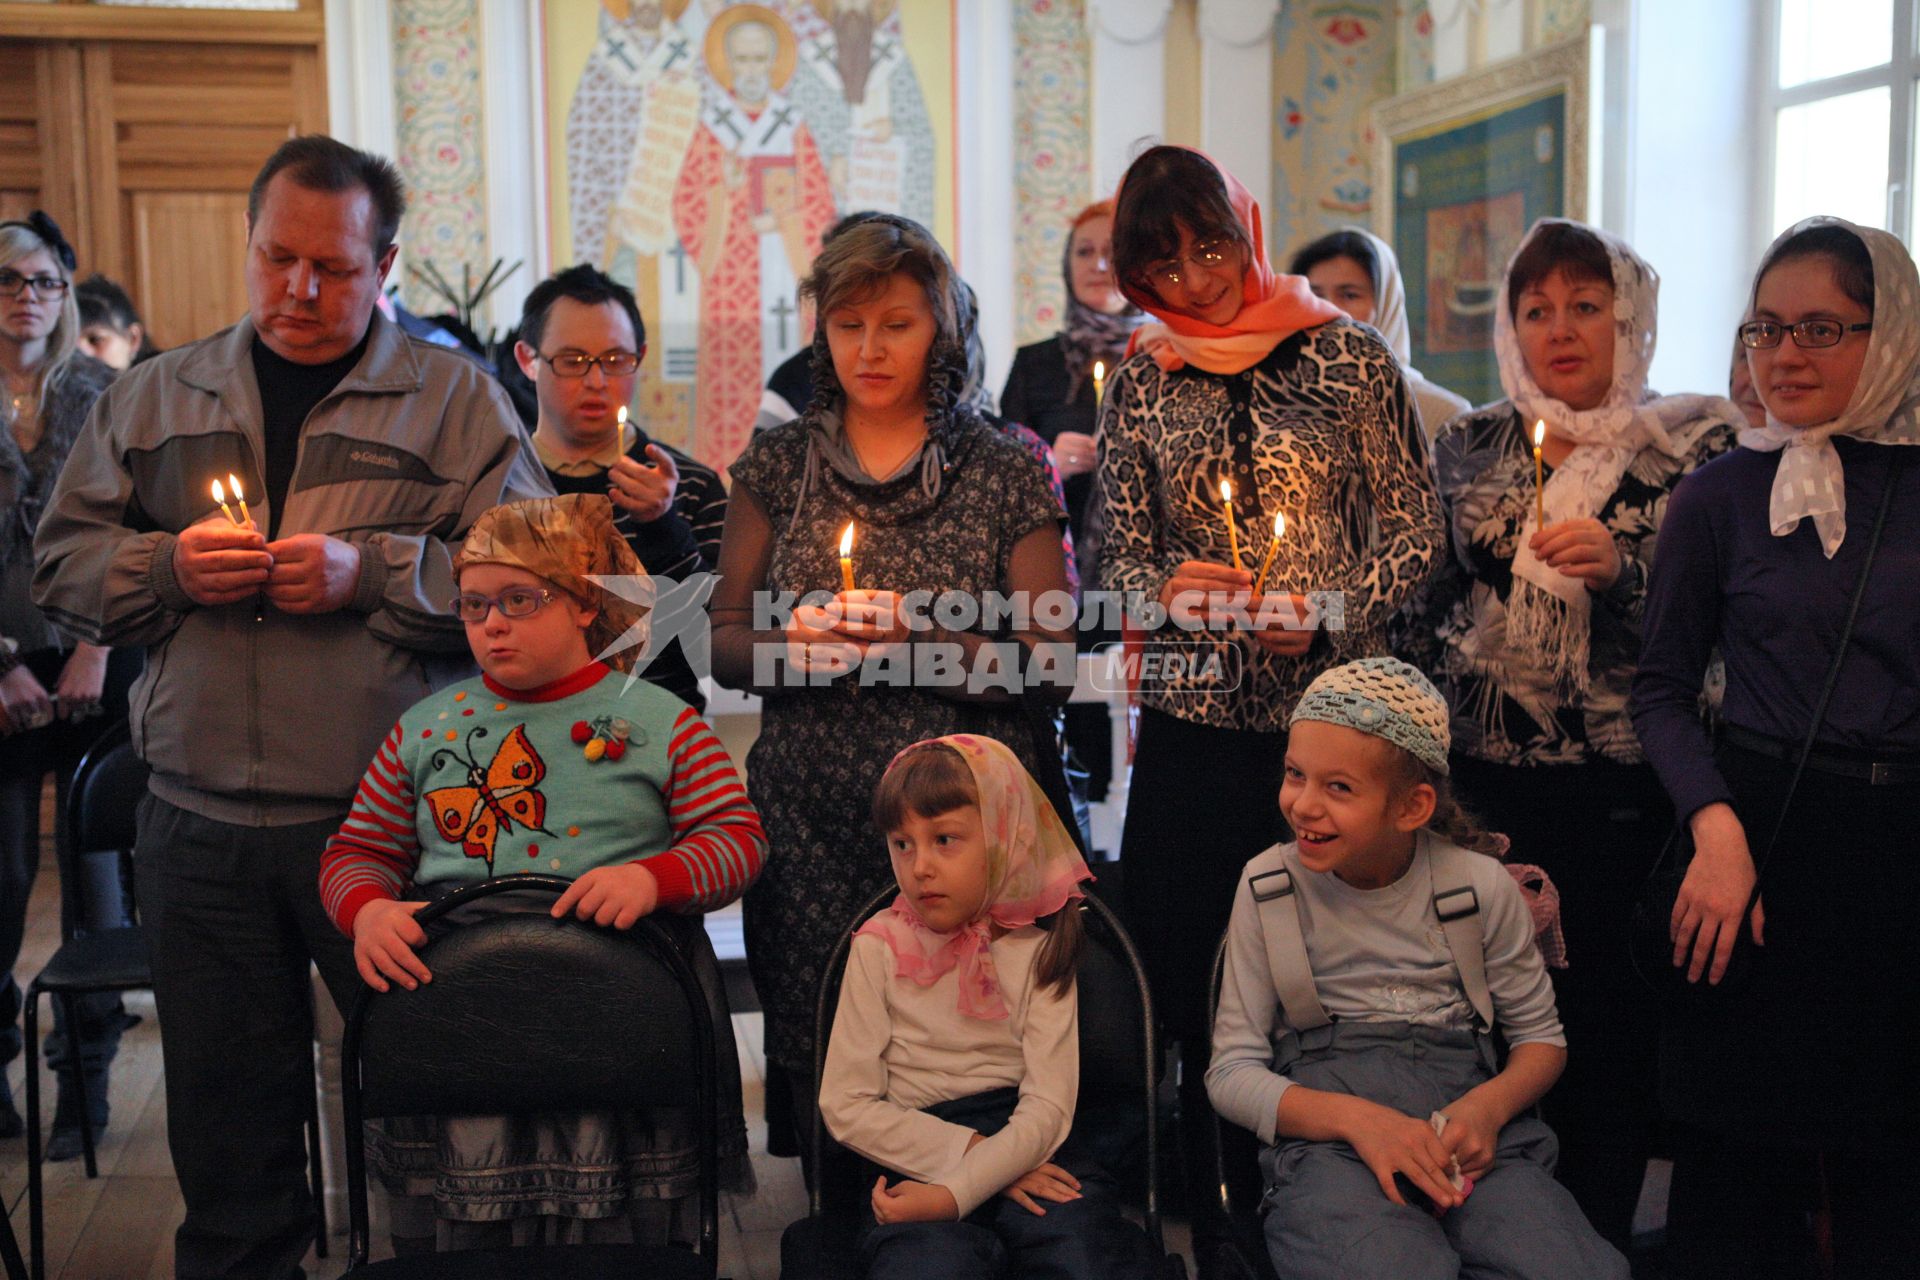 В Ставрополе, в храме Преображения господня прошел молебен детей-инвалидов. На снимке: дети с родителями в церкви.